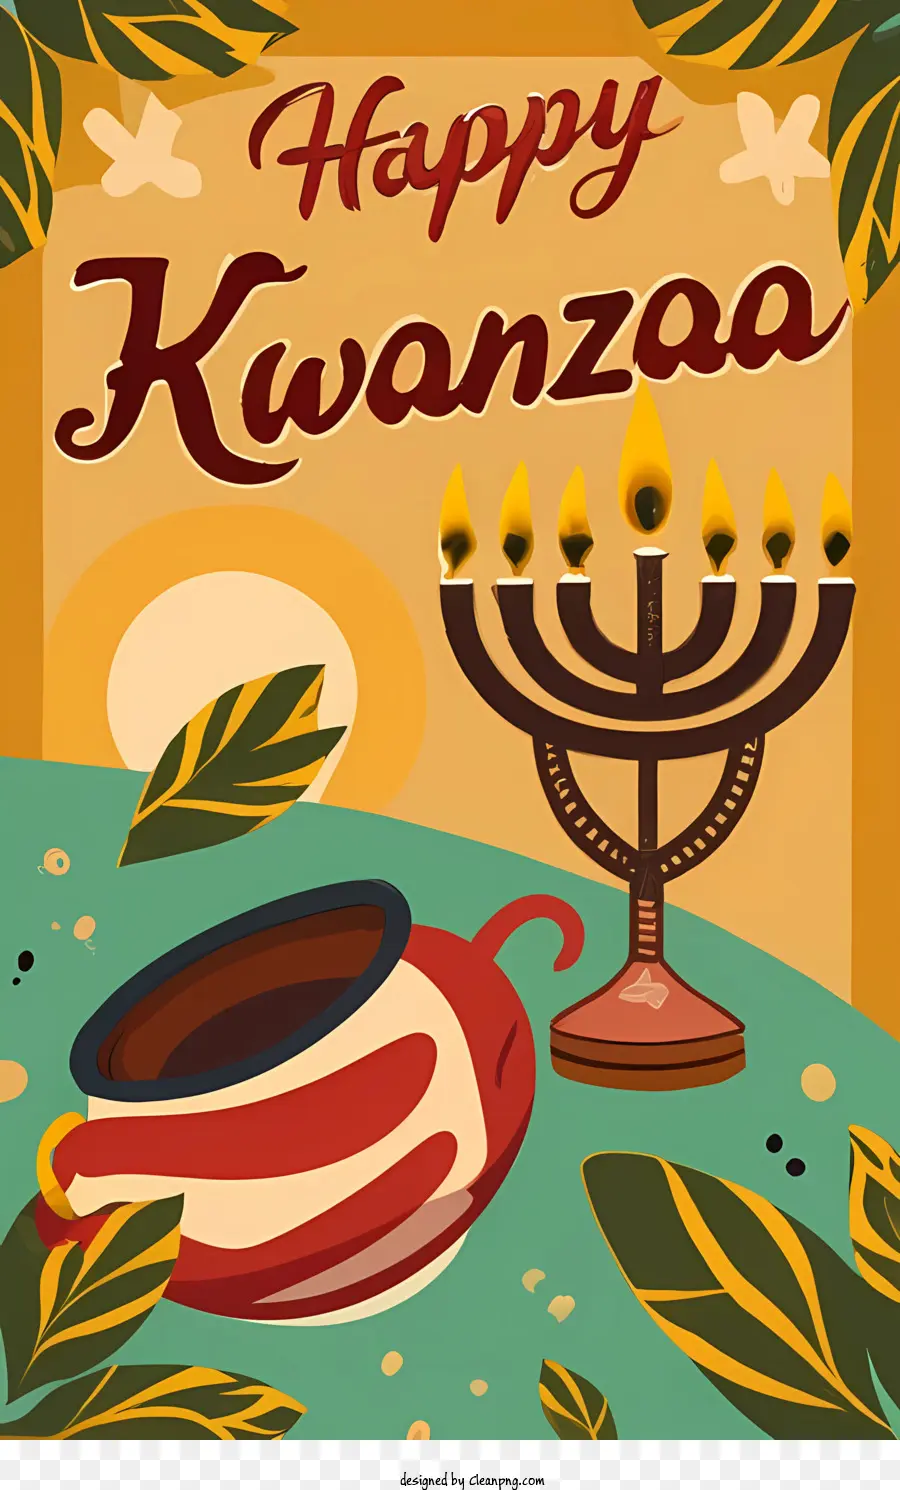 Happy Kwanzaa Kwanzaa Kwanzaa Card Card Ebraico Diversity delle vacanze - 